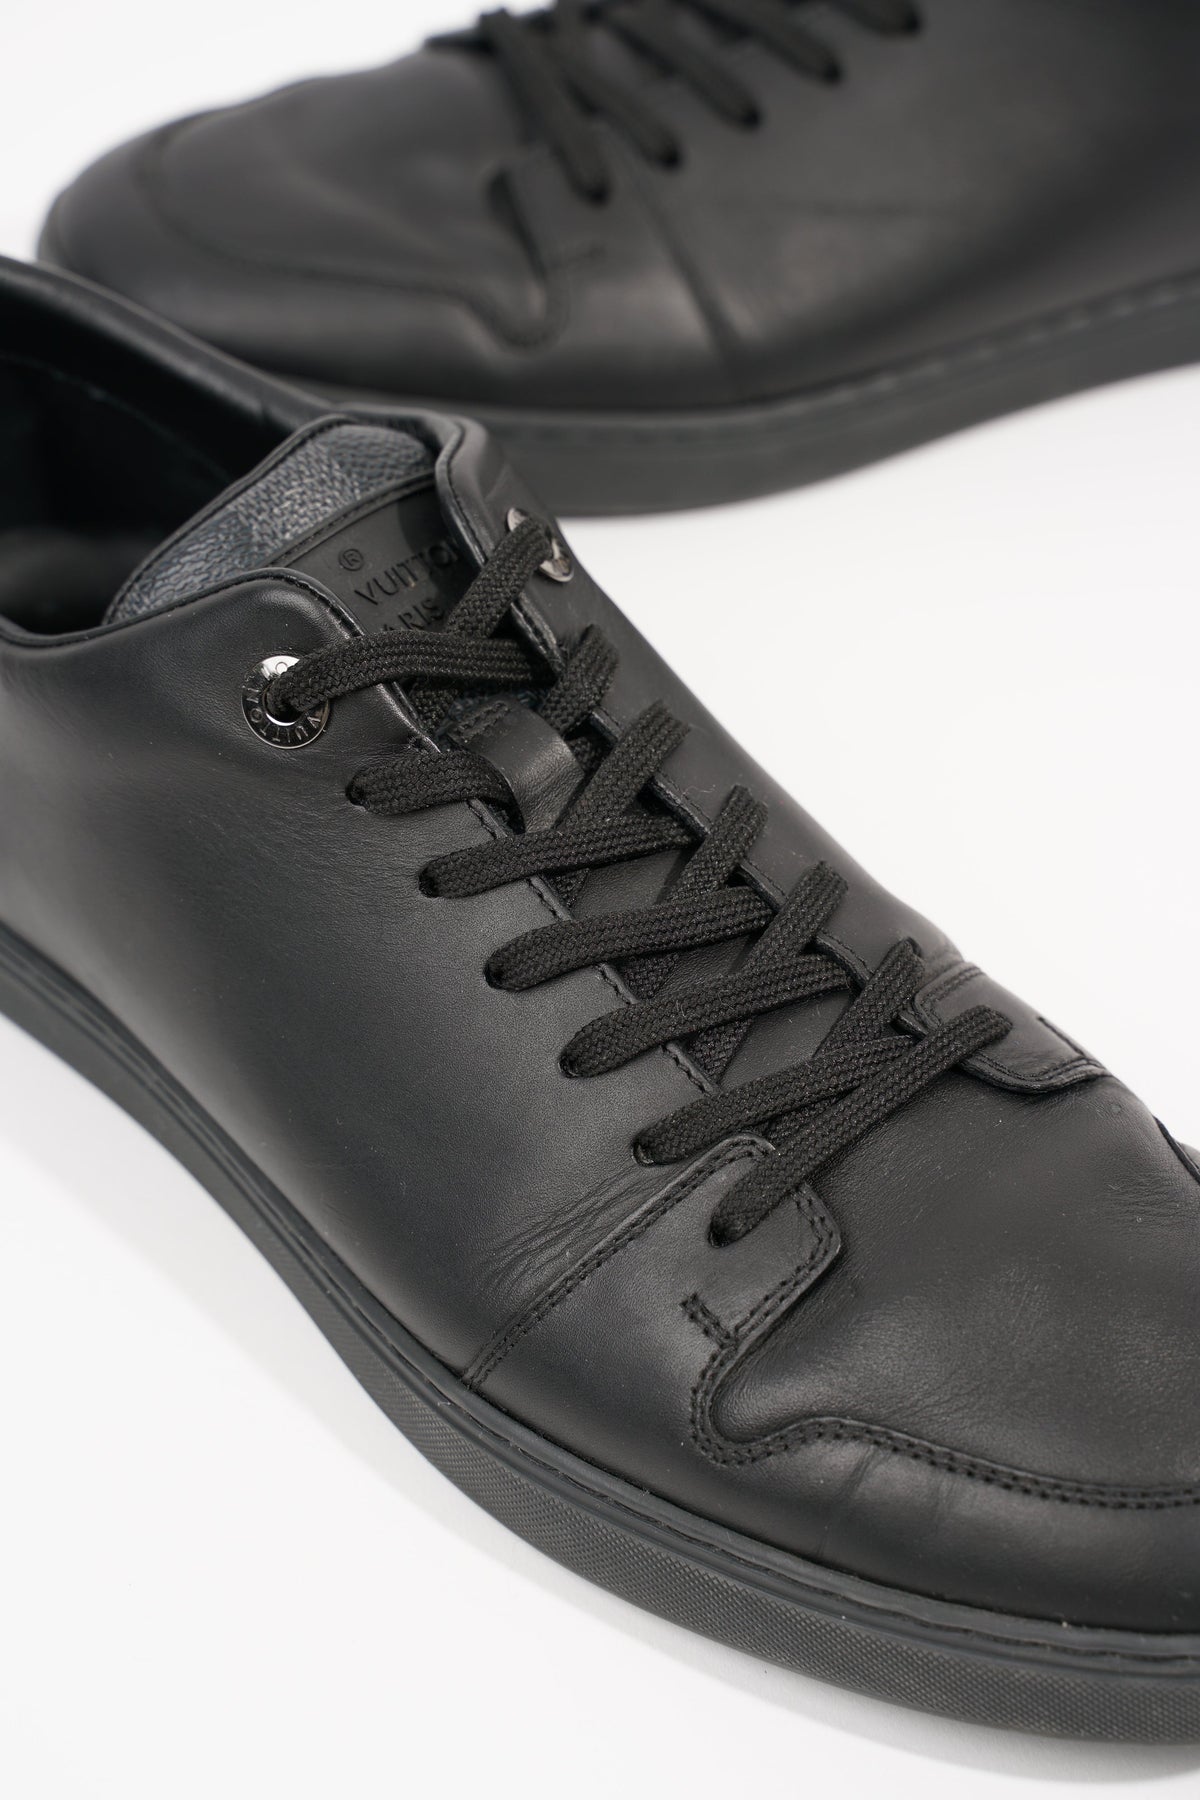 Louis Vuitton Black Petit Damier Shoes Men 7 US/ 6 UK/ 40 EUR Suede *NO  INSOLES*